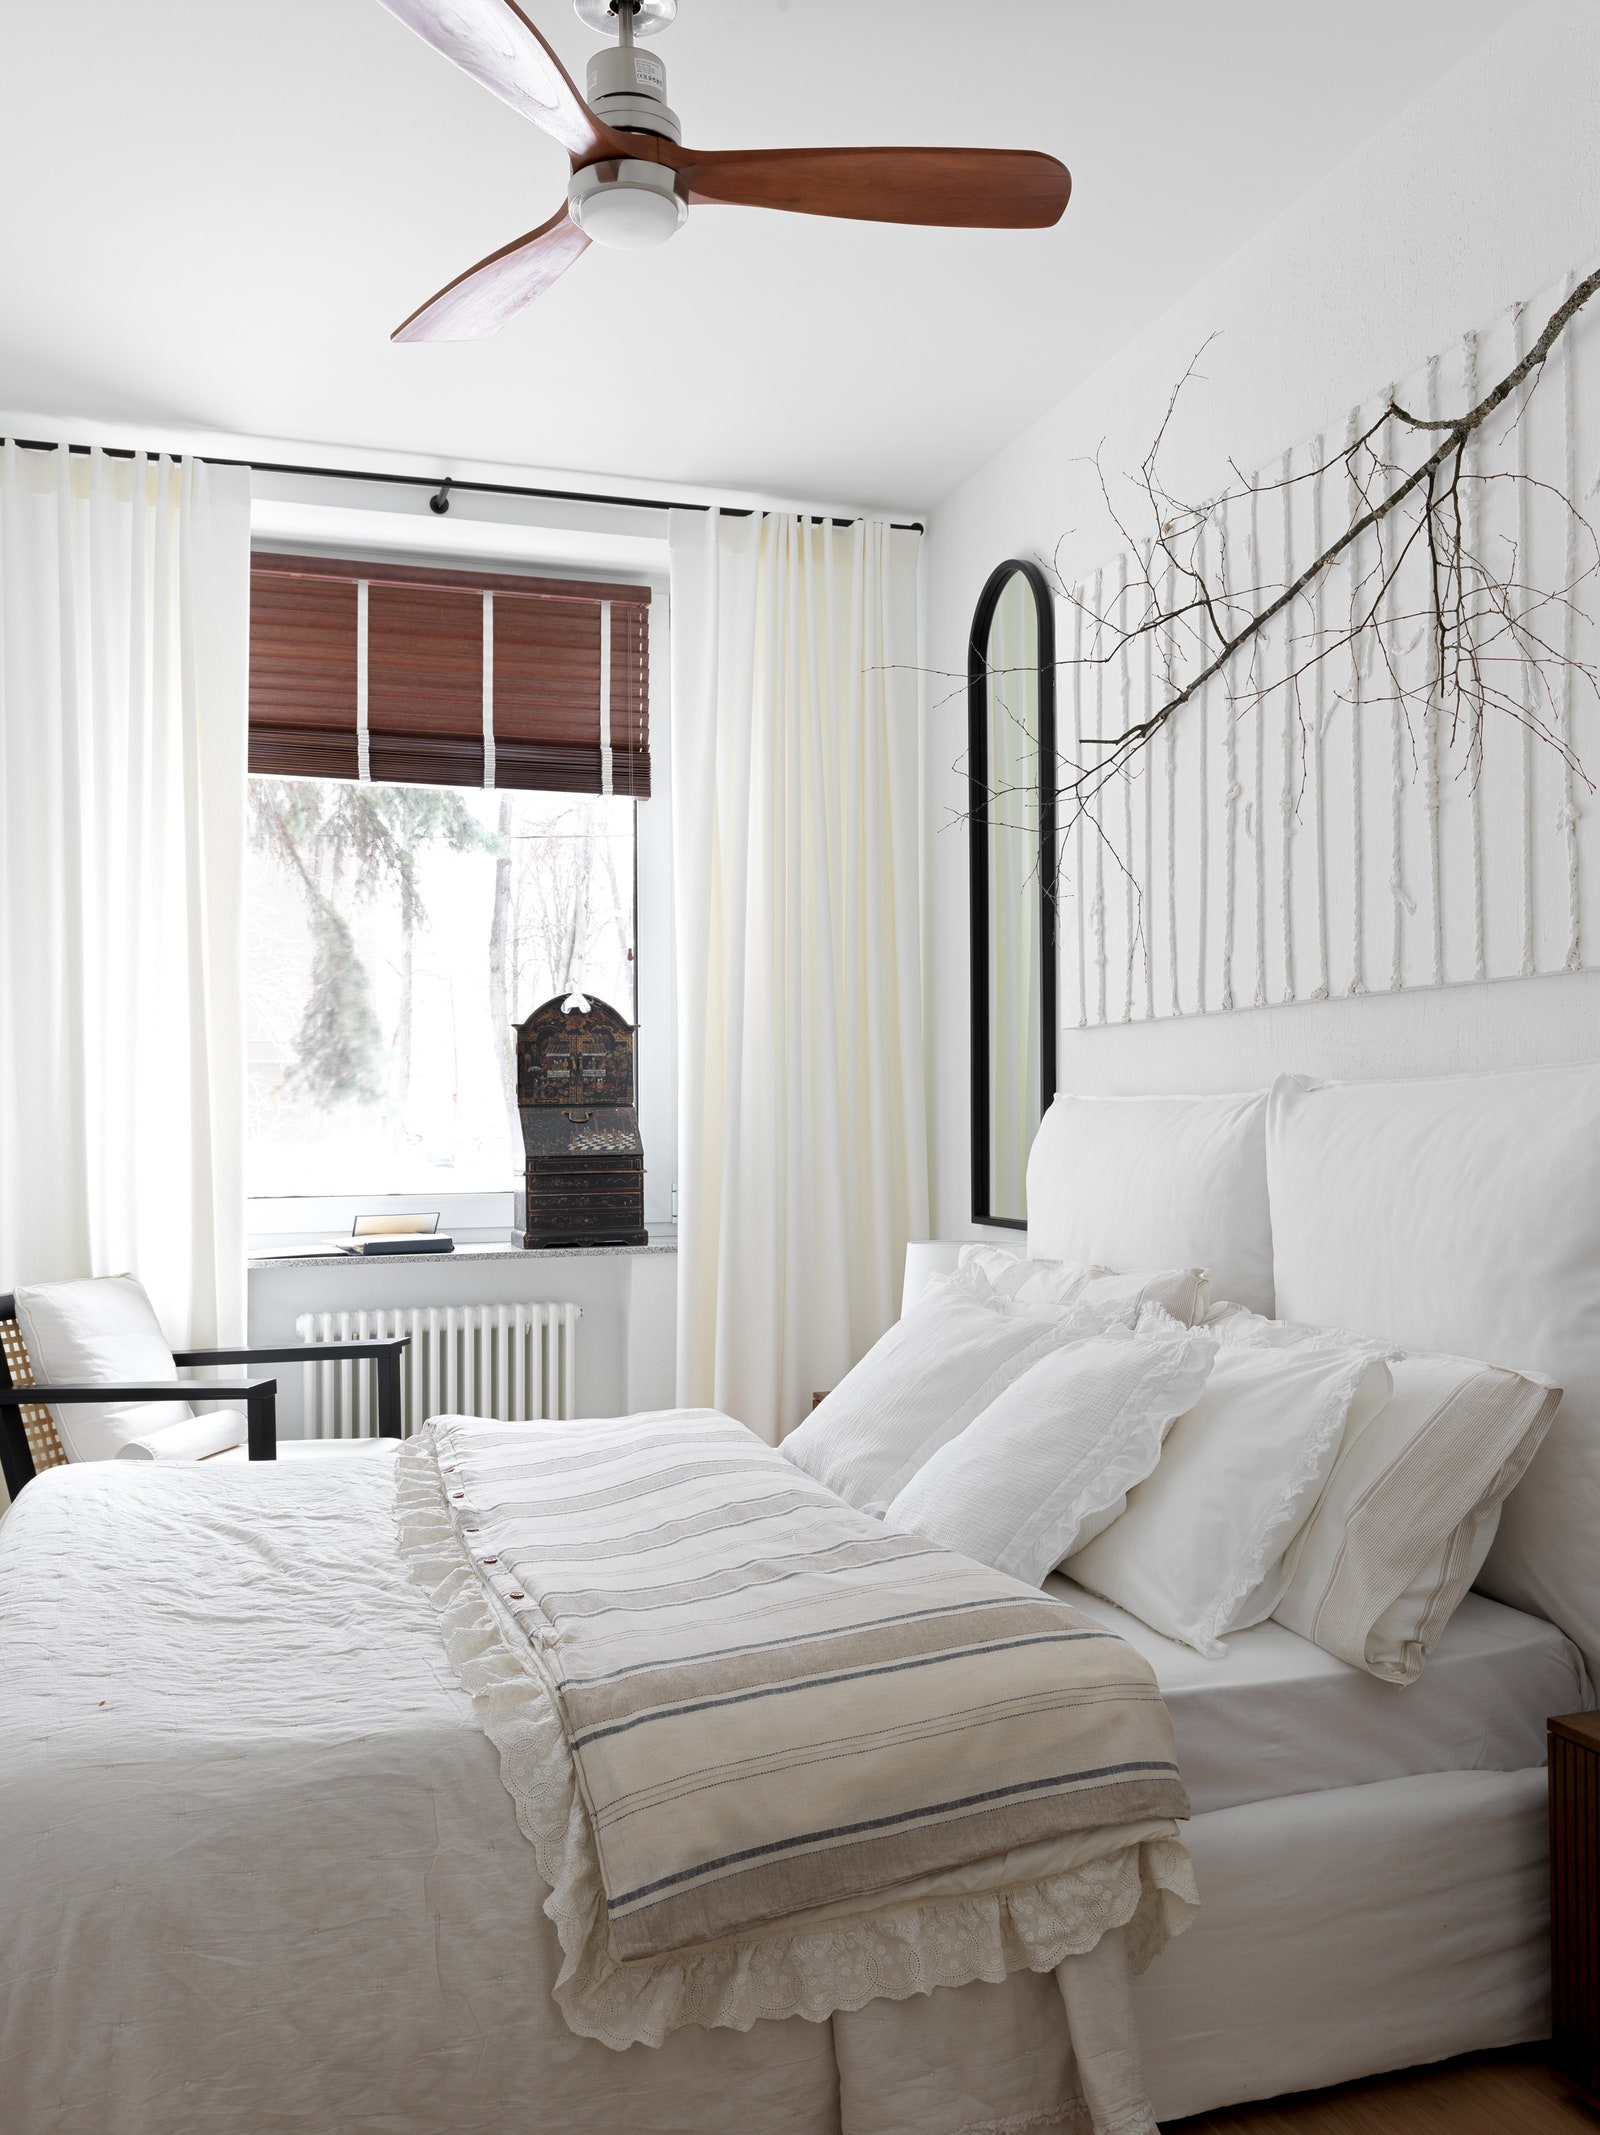 Фрагмент спальни. Кровать и кресло Gervasoni зеркало Zara Home над кроватью работа Masha amp Margot.